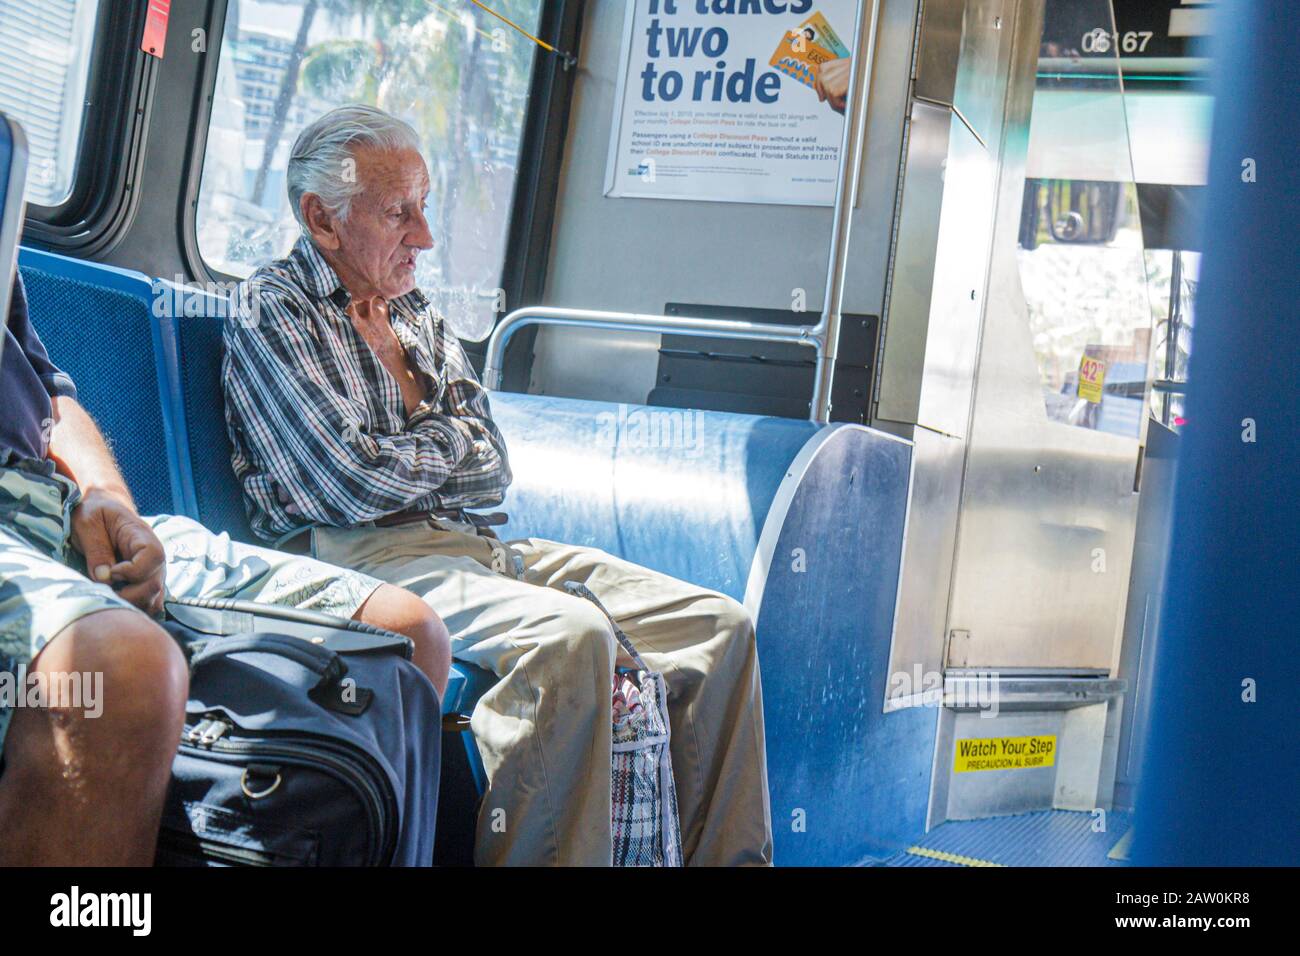 Miami Beach Florida, Metrobus, autobus pubblico, pullman, ispanico Latino latino immigrati immigrati etnici minoranza, anziani anziani anziani anziani cittadini pensionati Foto Stock